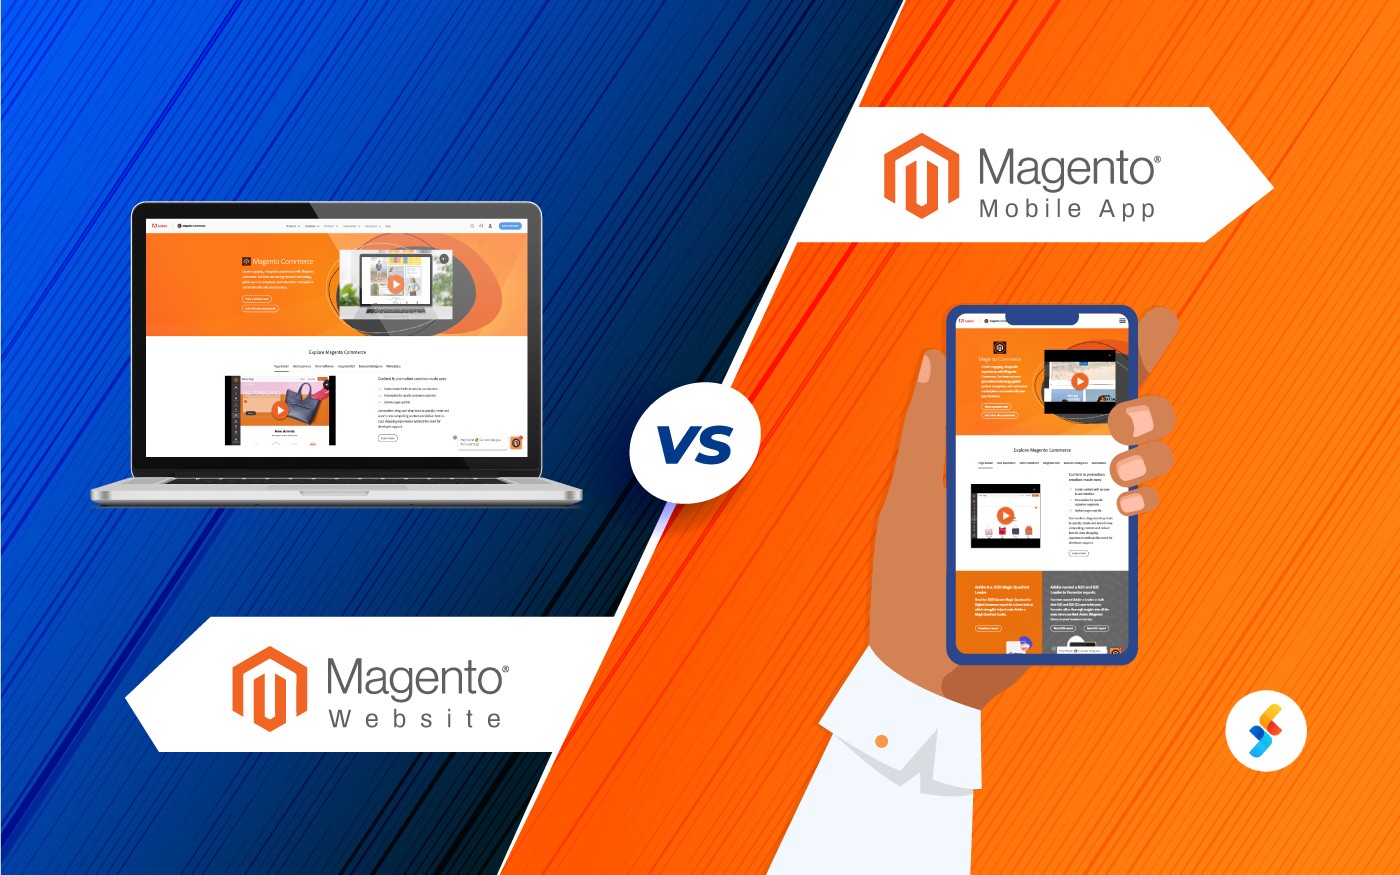 Magento Website vs. Magento Mobile App